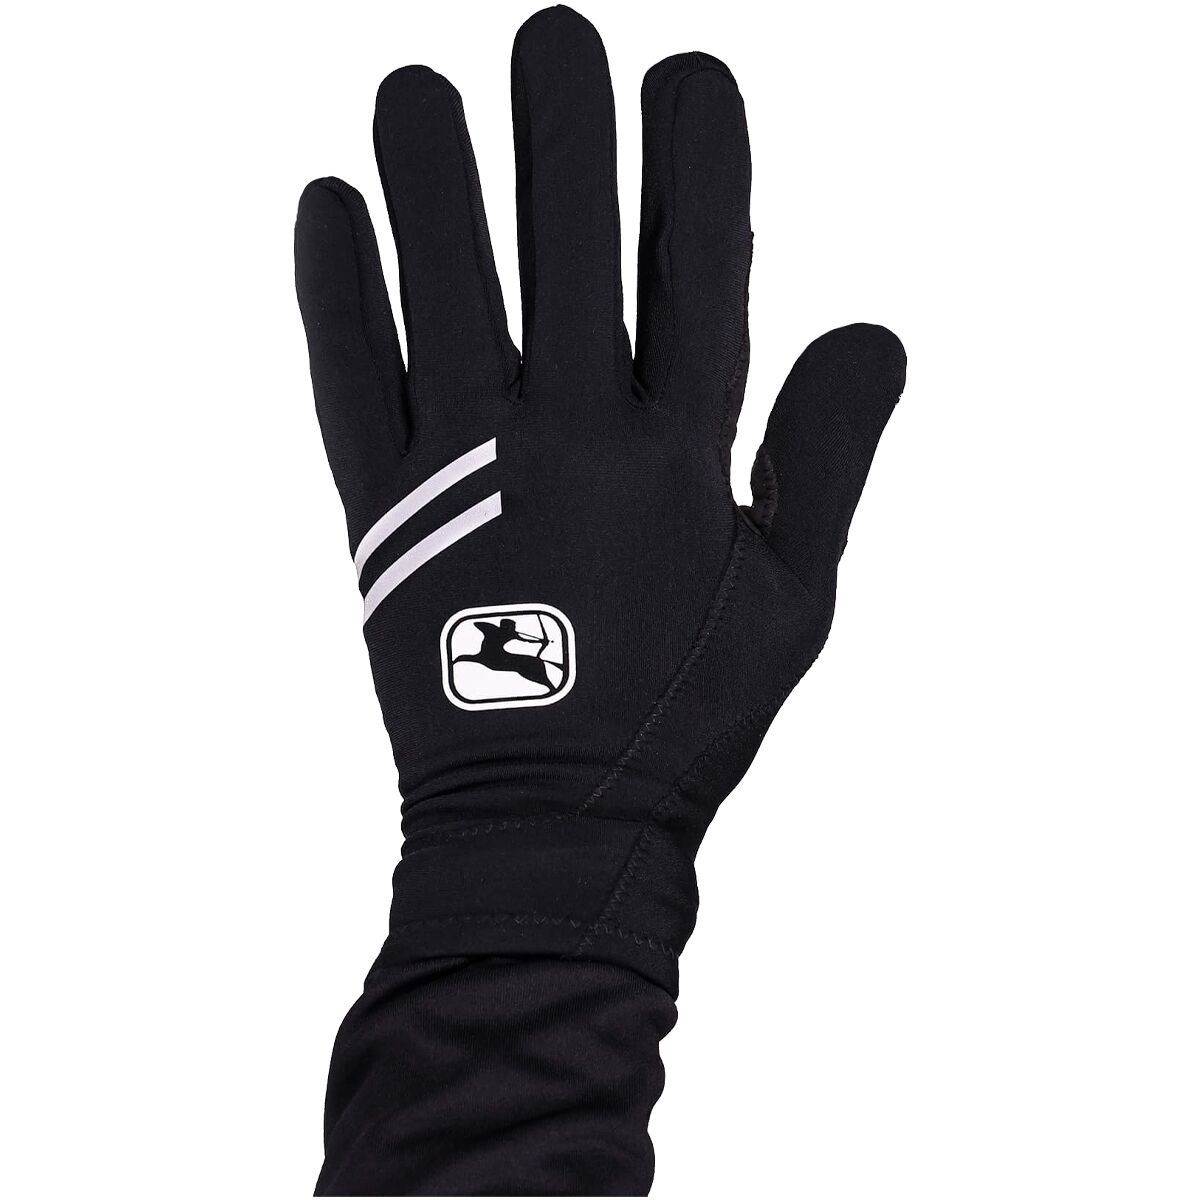 Giordana G-Shield Thermal Gloves - Men's